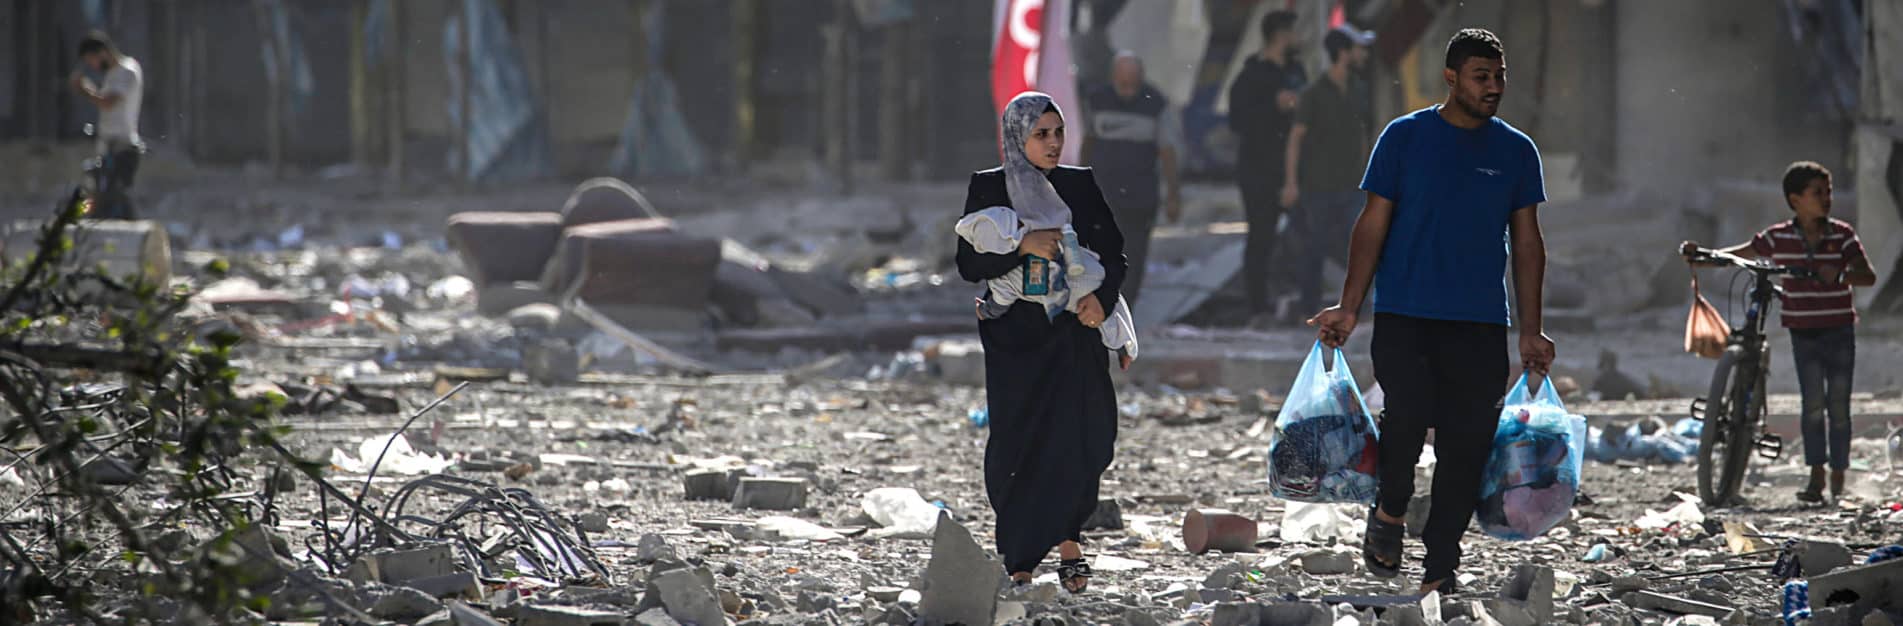 Humanitäre Krise im Nahen Osten